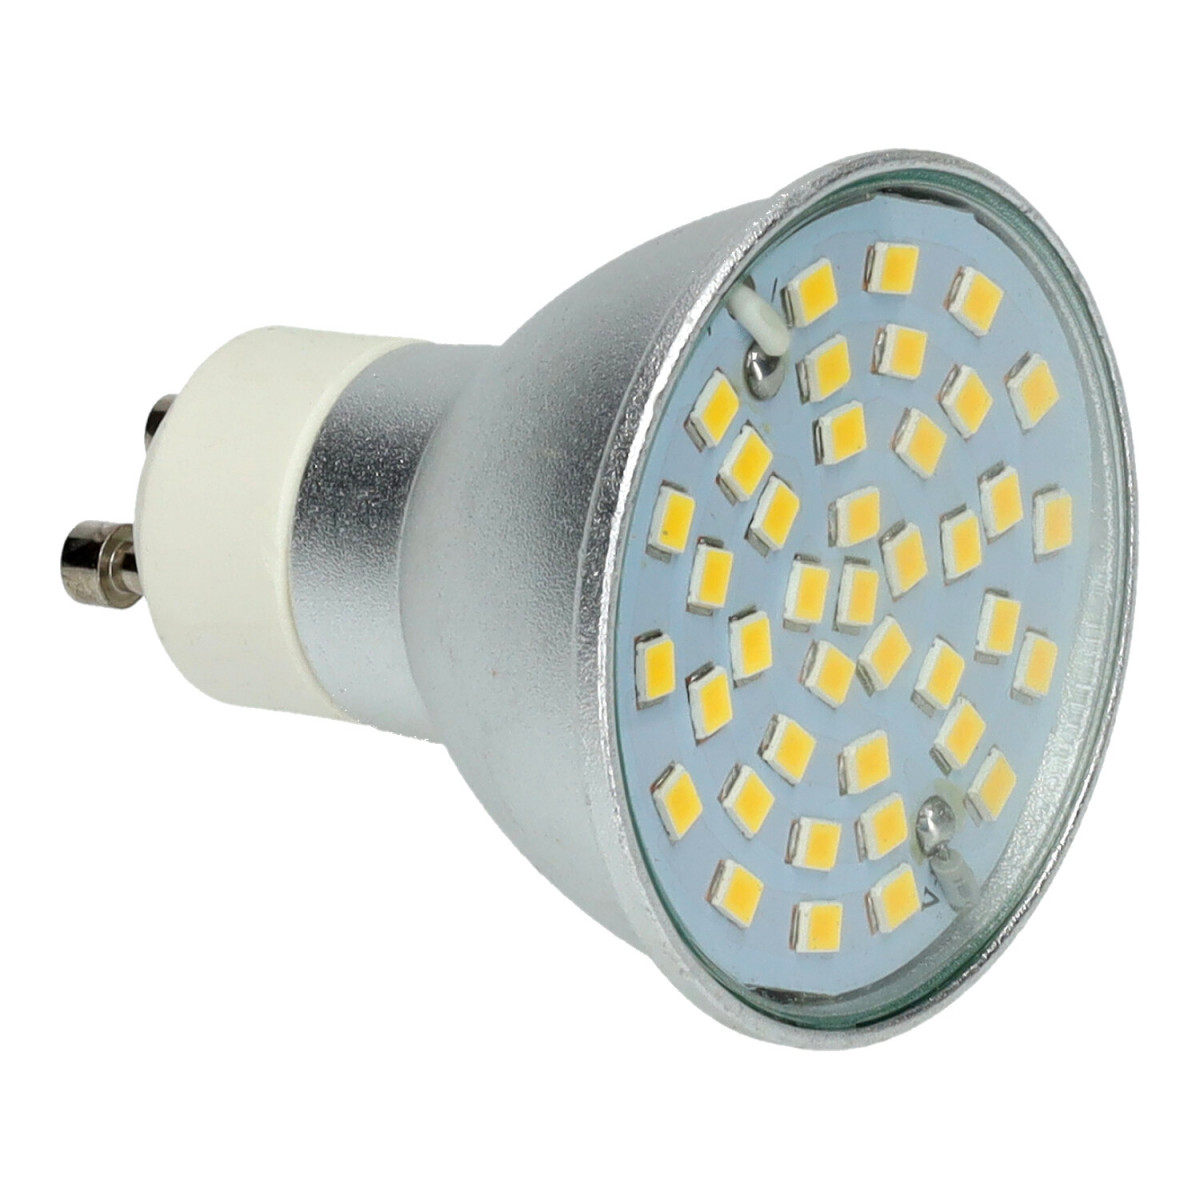 beginsel Verdeelstuk buitenste GU10 7W dichroic LED lamp, warm white and cool white light, 660 lumens